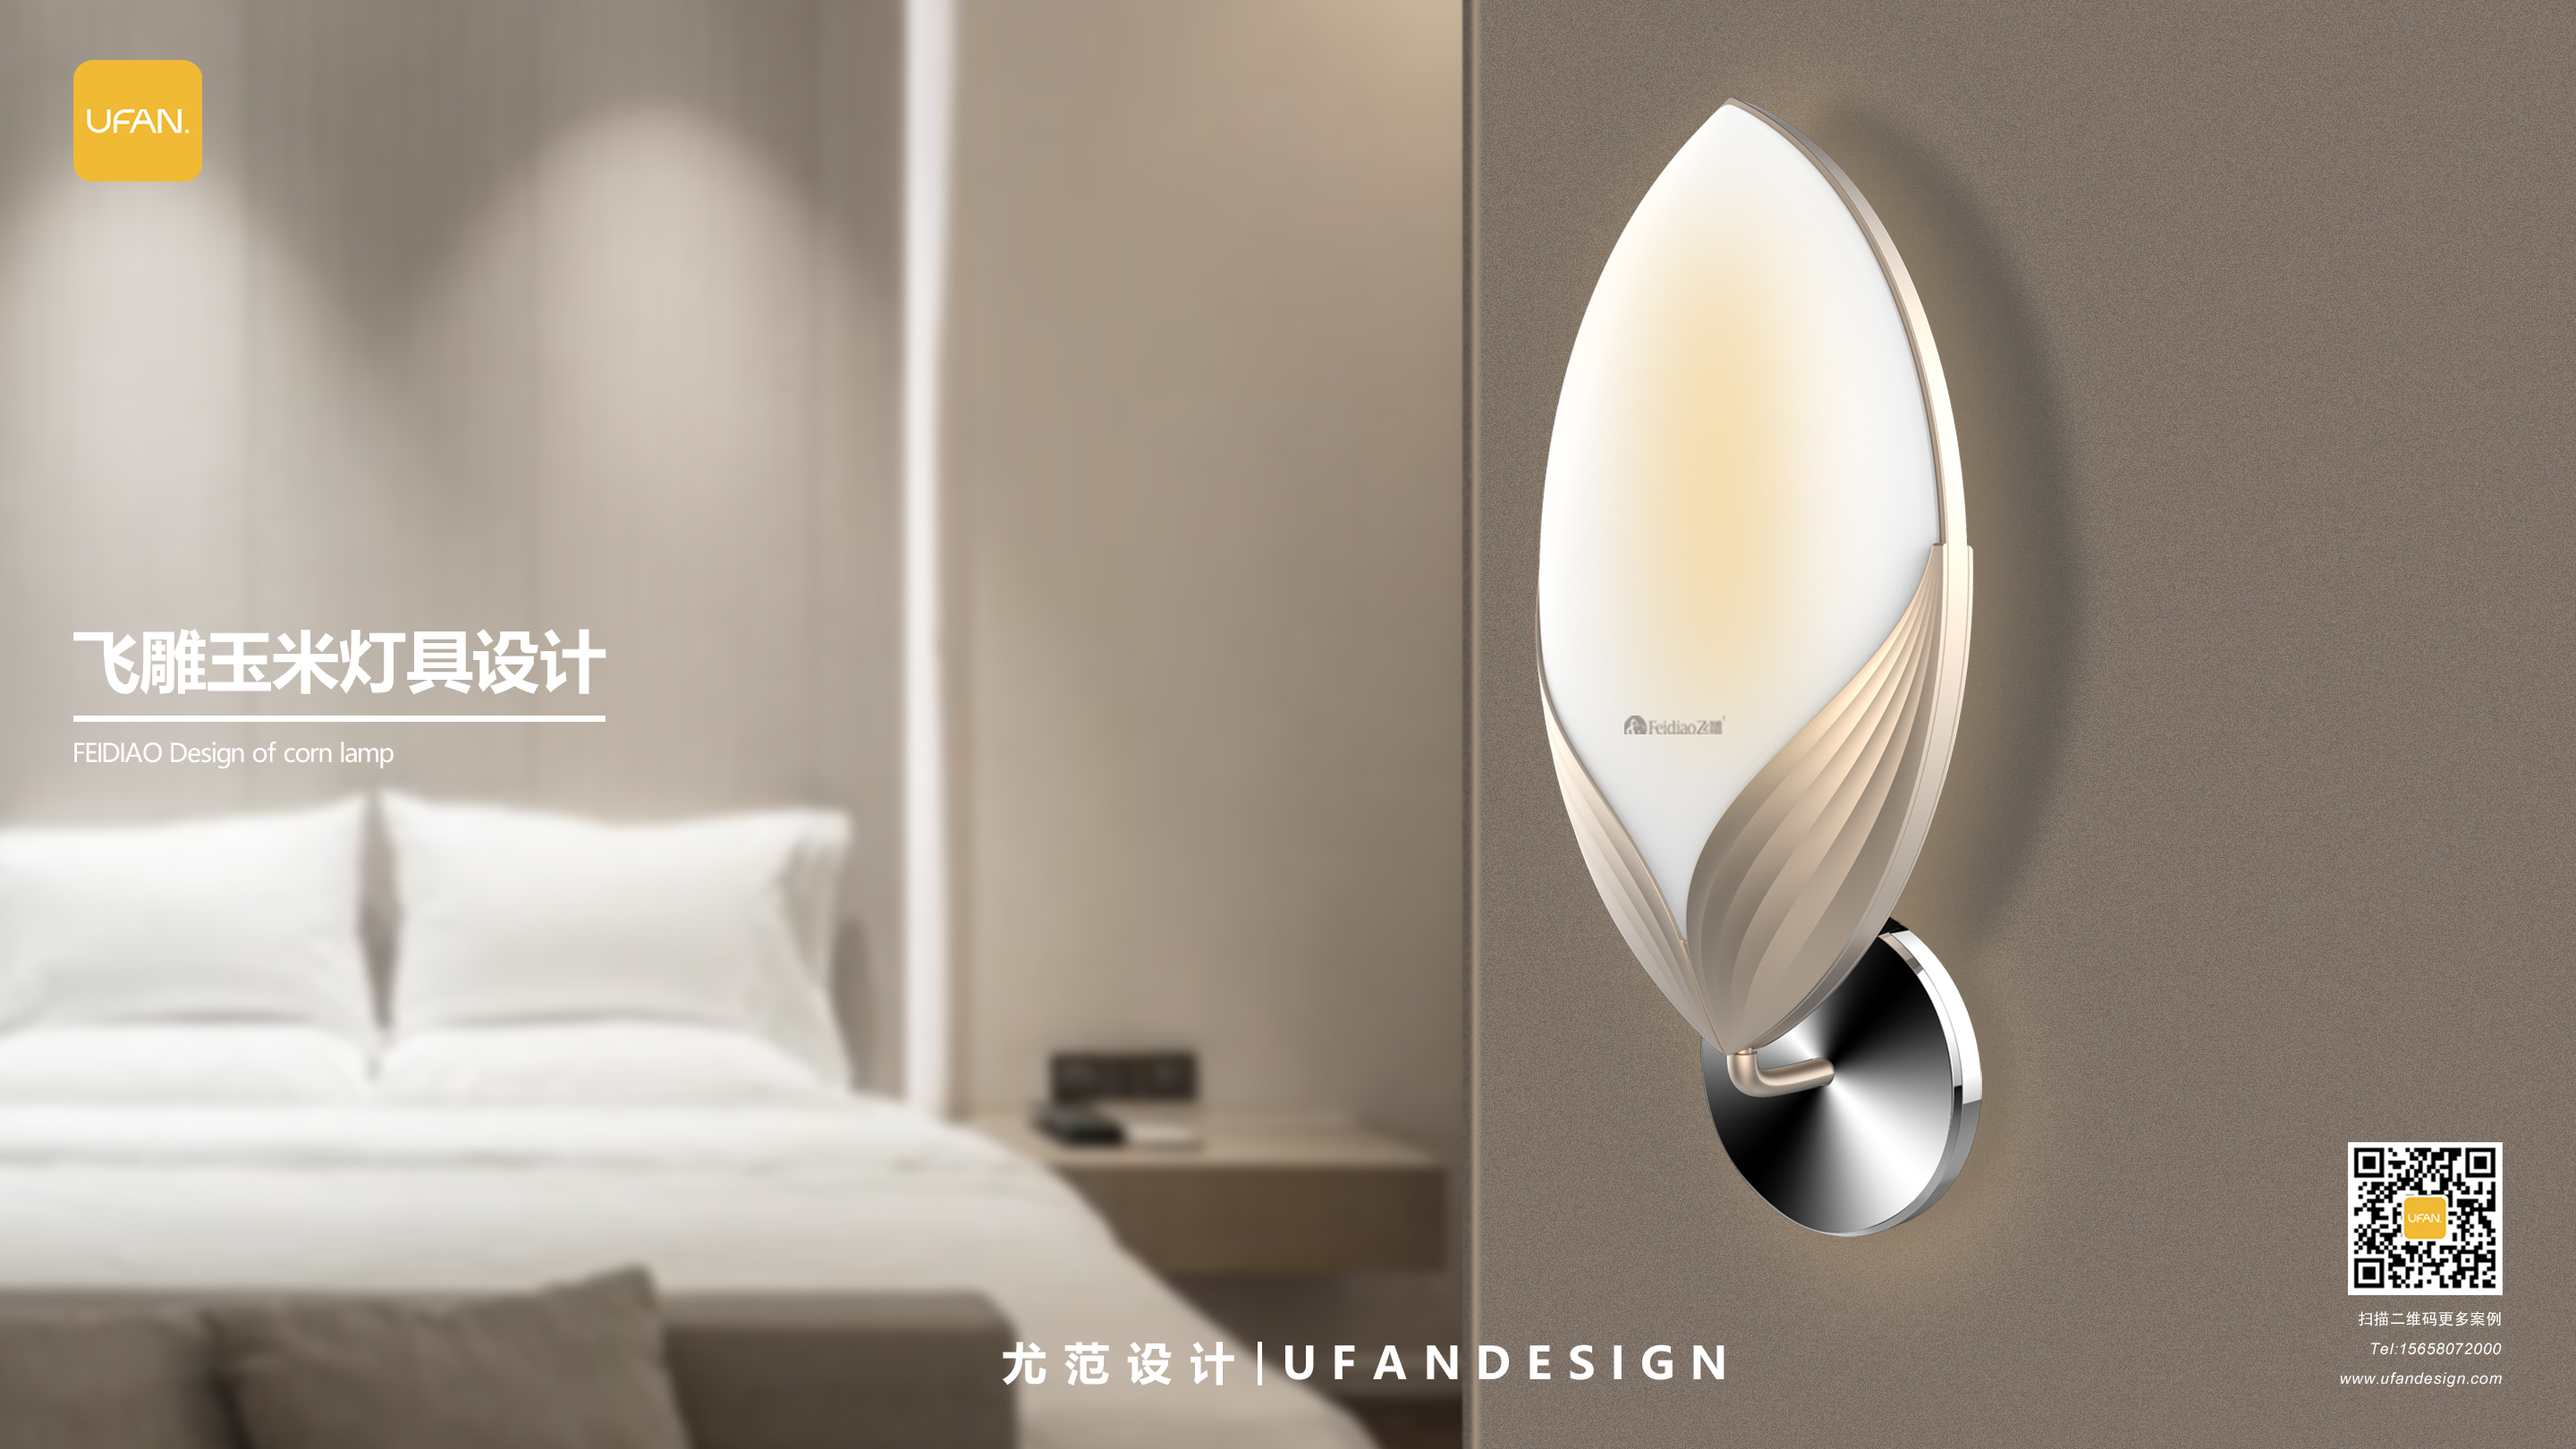 杭州尤范设计工业设计公司-飞雕灯具设计公司-灯具外观设计01.jpg